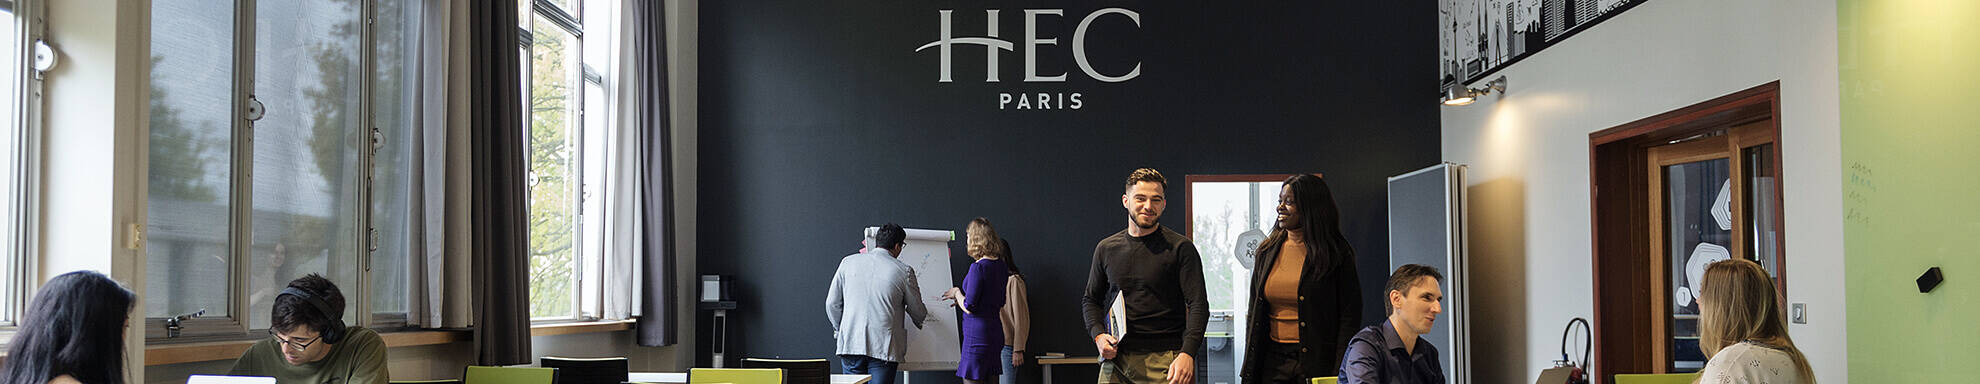 Etudiants HEC Paris au Learning Center